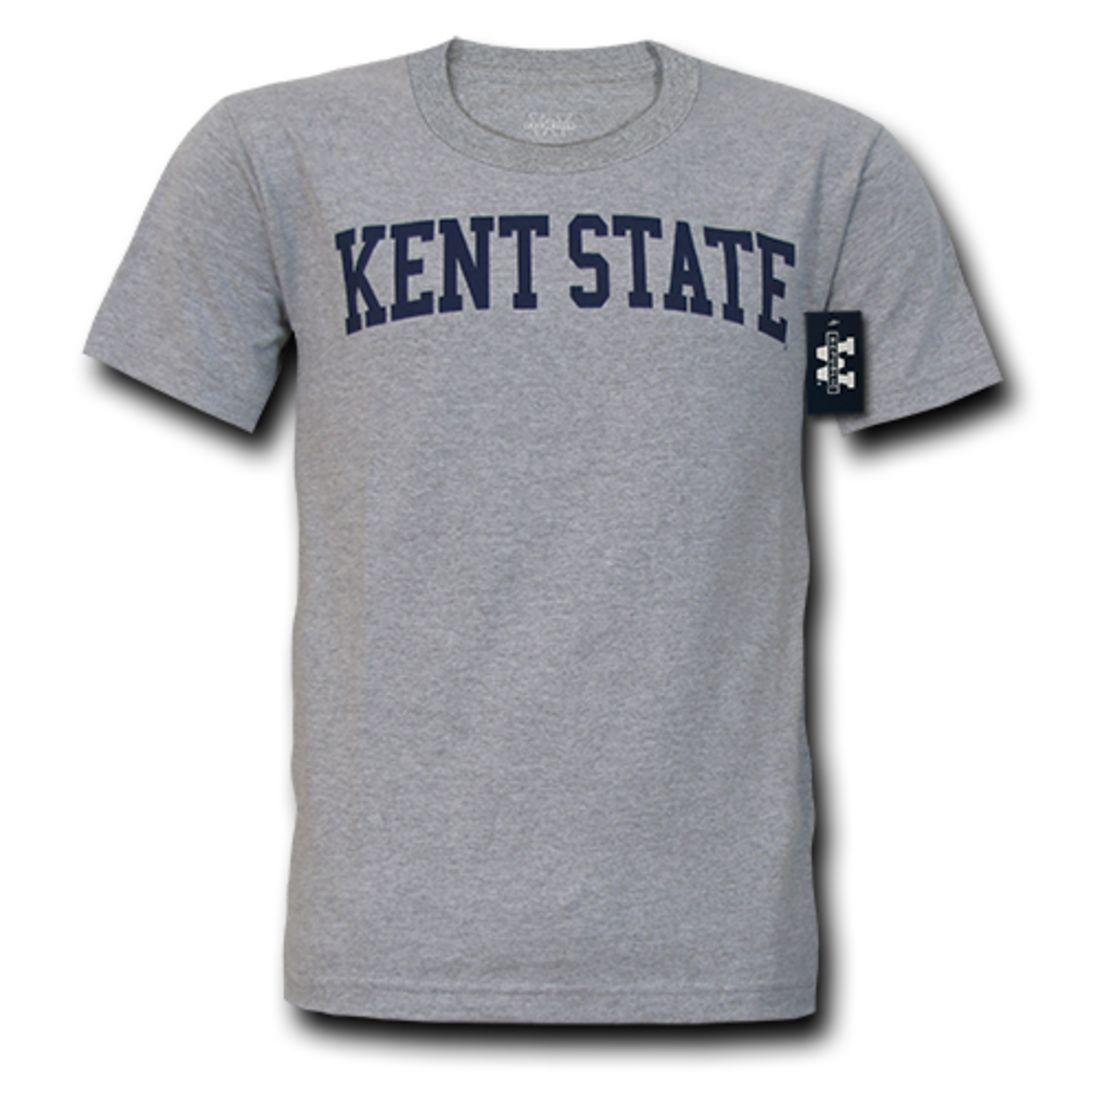 KSU Kent State University Game Day T-Shirt Heather Grey-Campus-Wardrobe